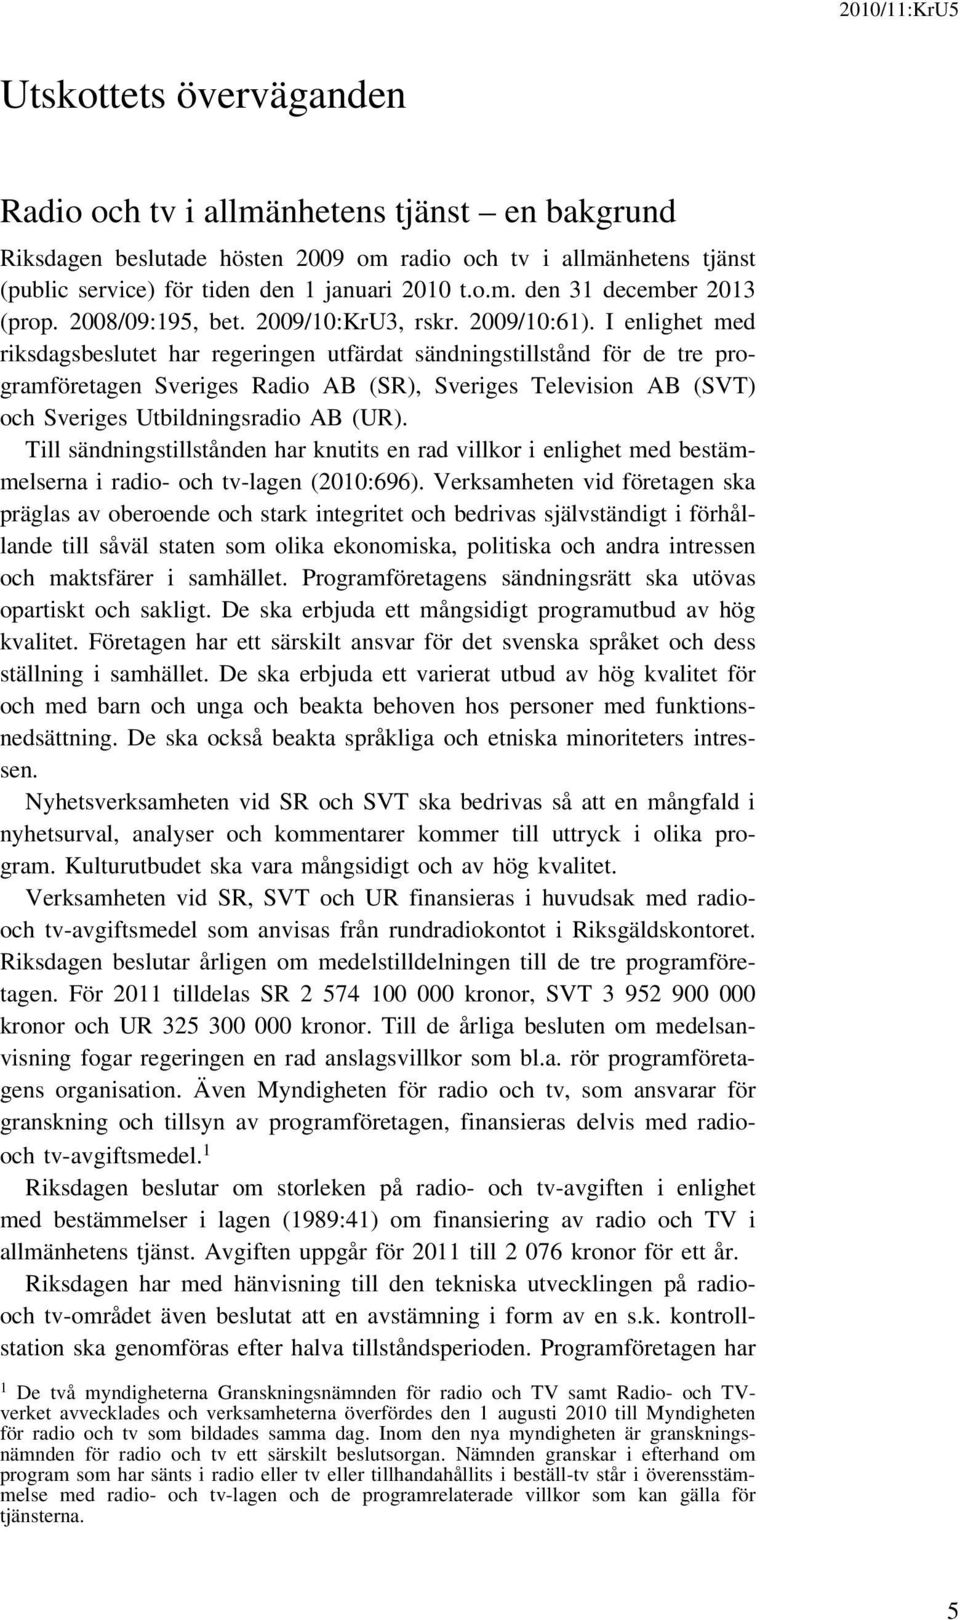 I enlighet med riksdagsbeslutet har regeringen utfärdat sändningstillstånd för de tre programföretagen Sveriges Radio AB (SR), Sveriges Television AB (SVT) och Sveriges Utbildningsradio AB (UR).